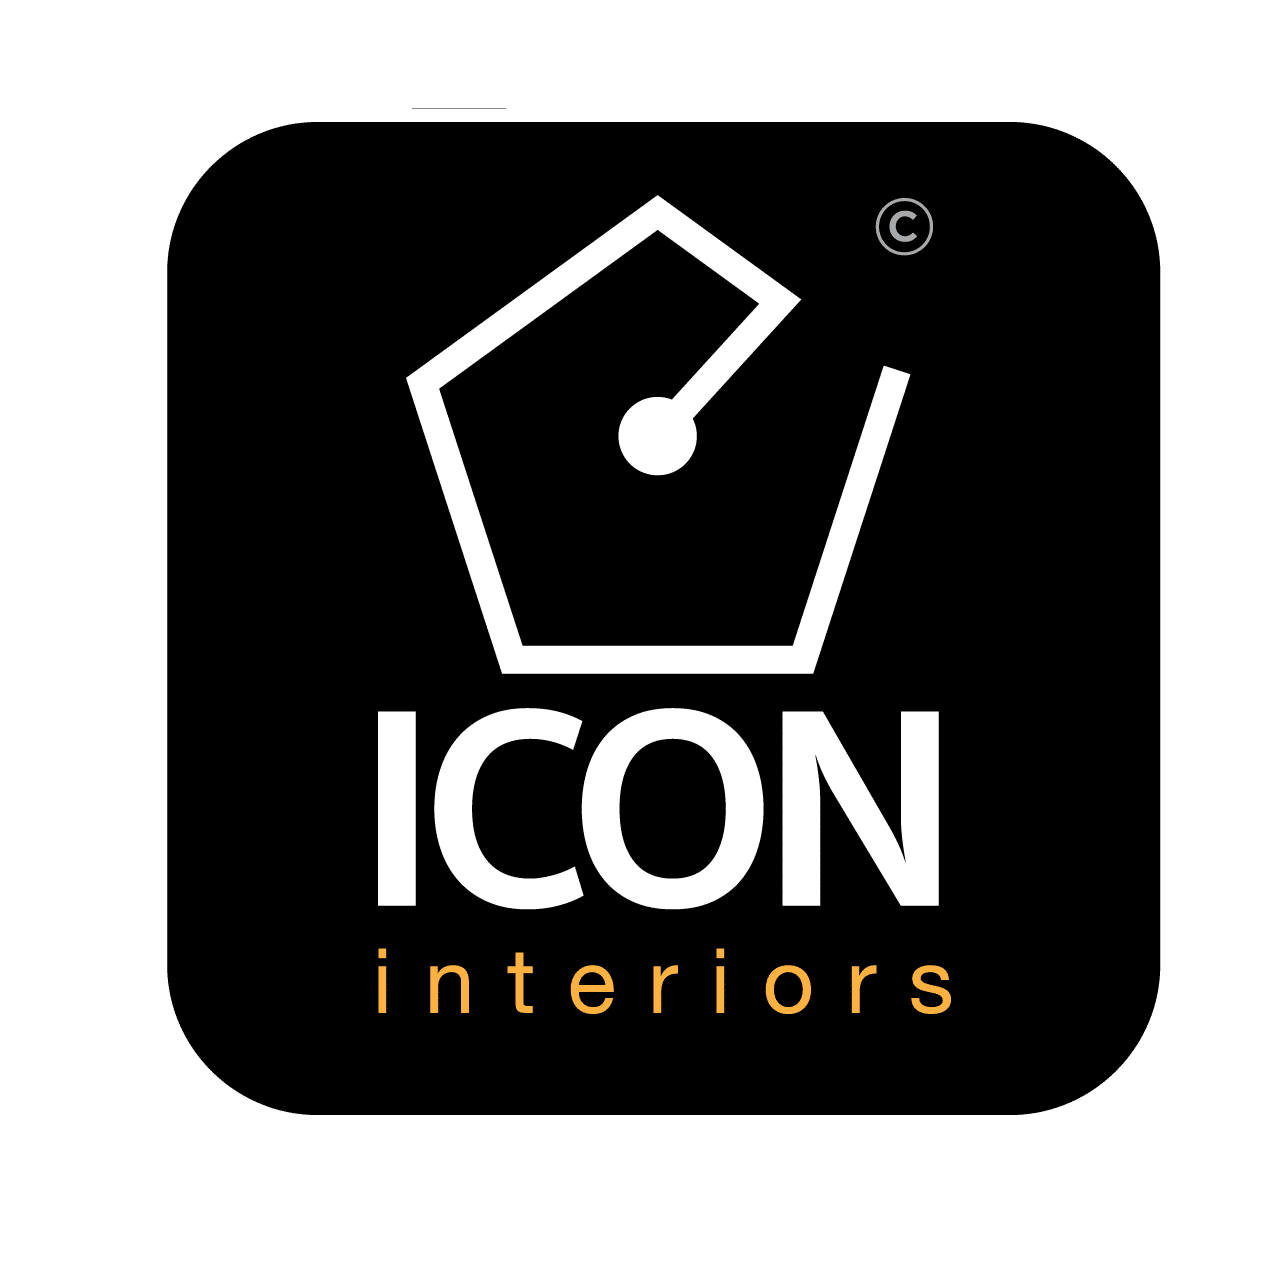 Icon interiors бюро интерьеров